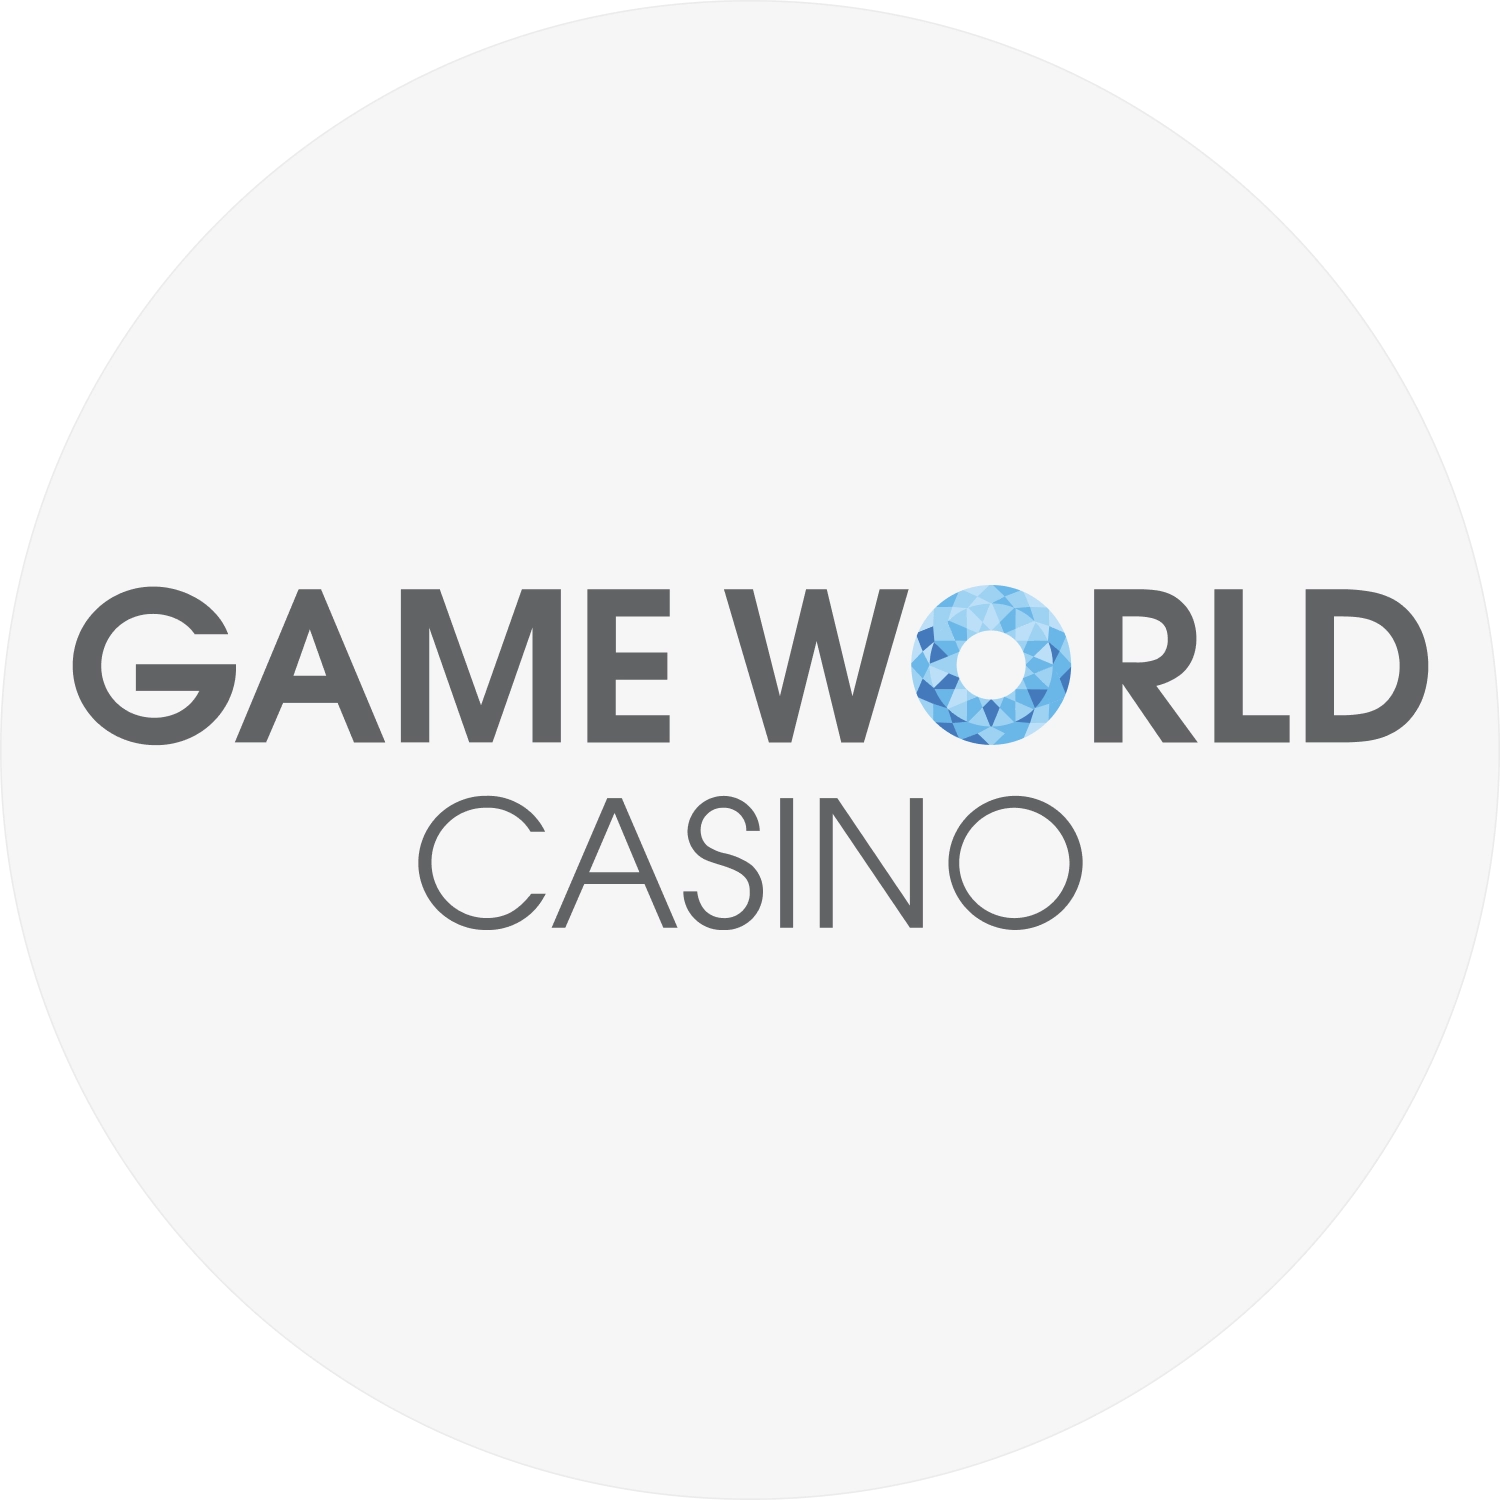 Game World casino logo rotund gri HQ